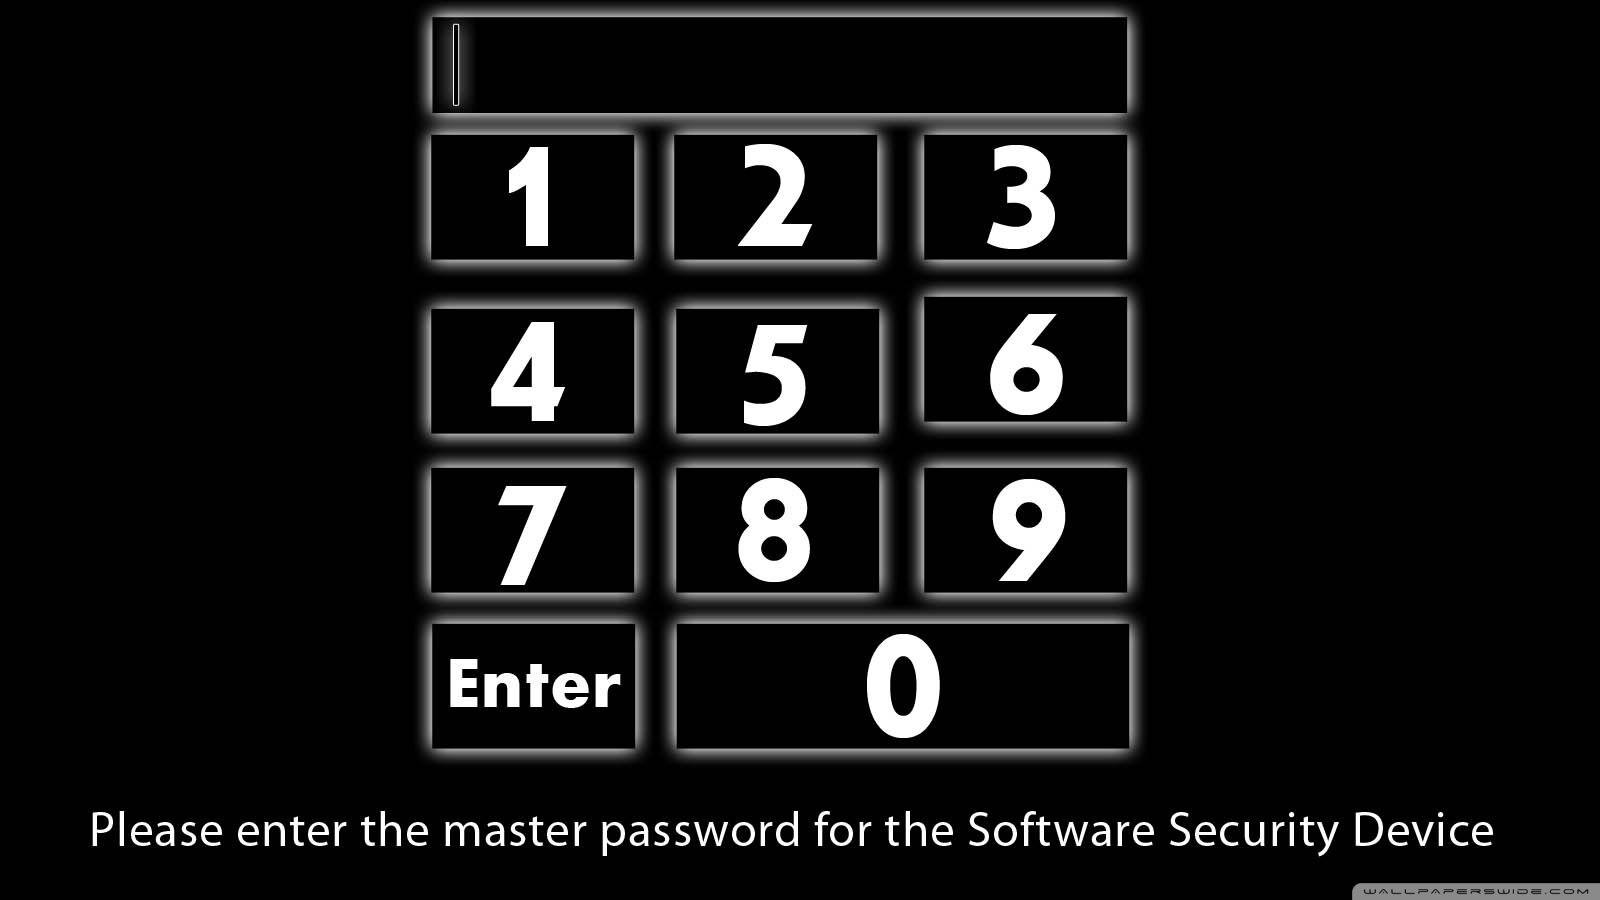 Пароль игра ответы. Обои password. Обои с паролем. Пароль enter password. Enter password обои.